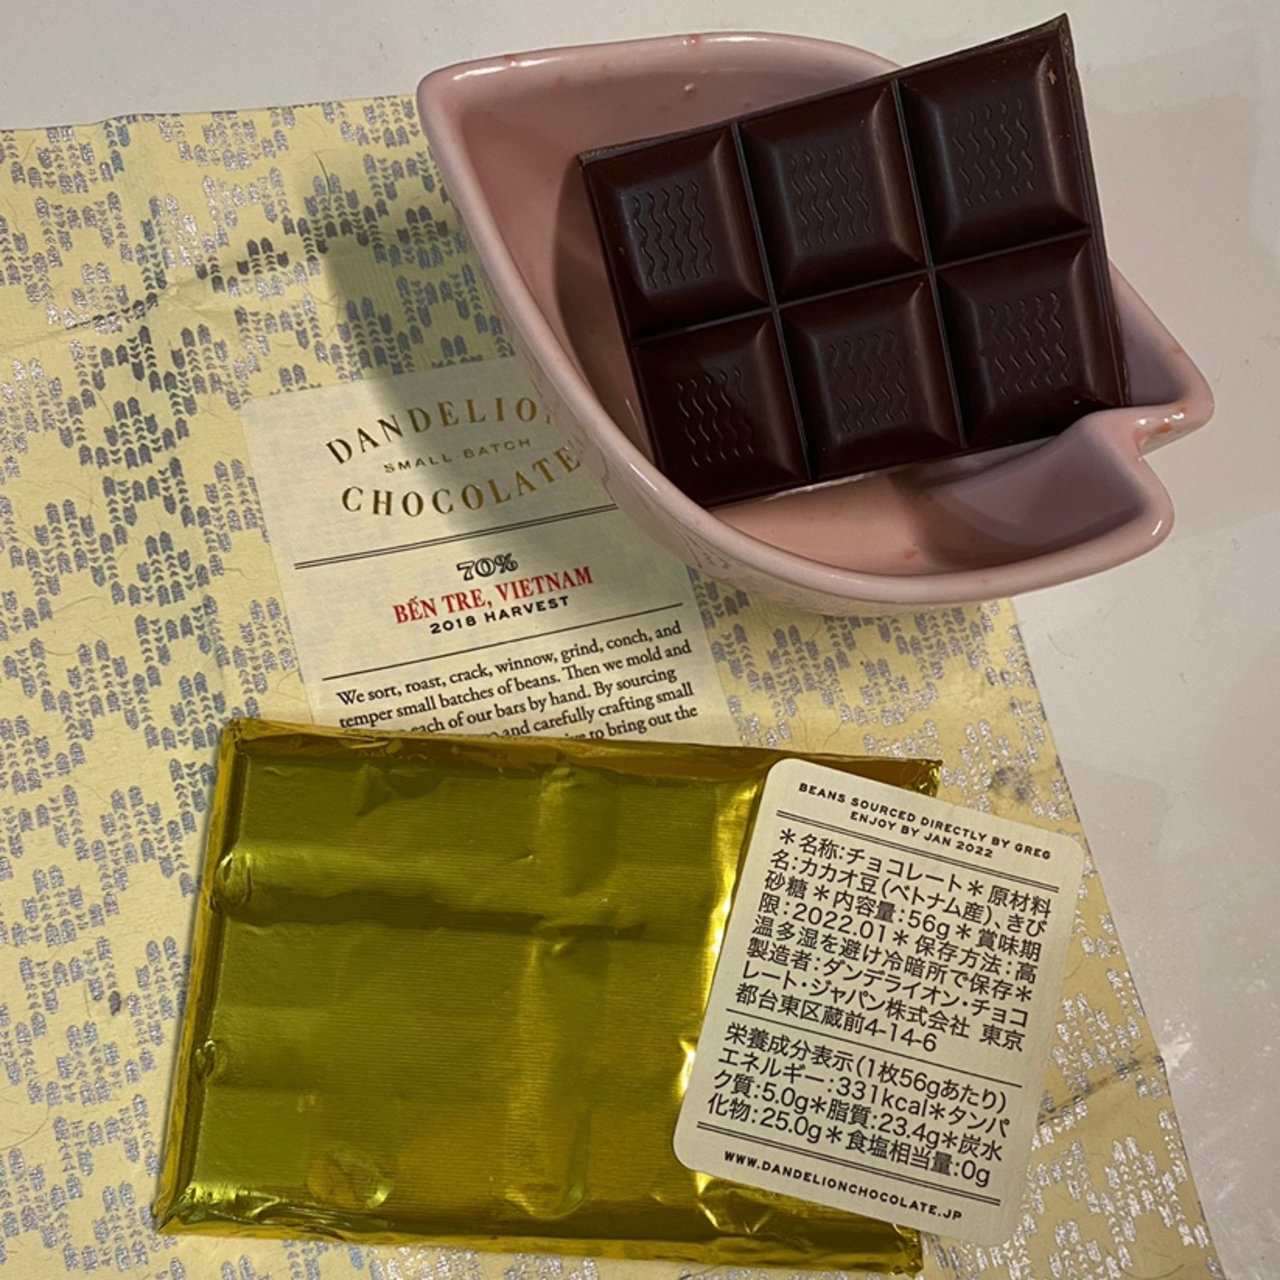 ベンチェ ベトナム 70 ダンデライオン チョコレート ジャパン Dandelion Chocolate Japan の口コミ一覧 おいしい一皿が集まるグルメコミュニティサービス Sarah